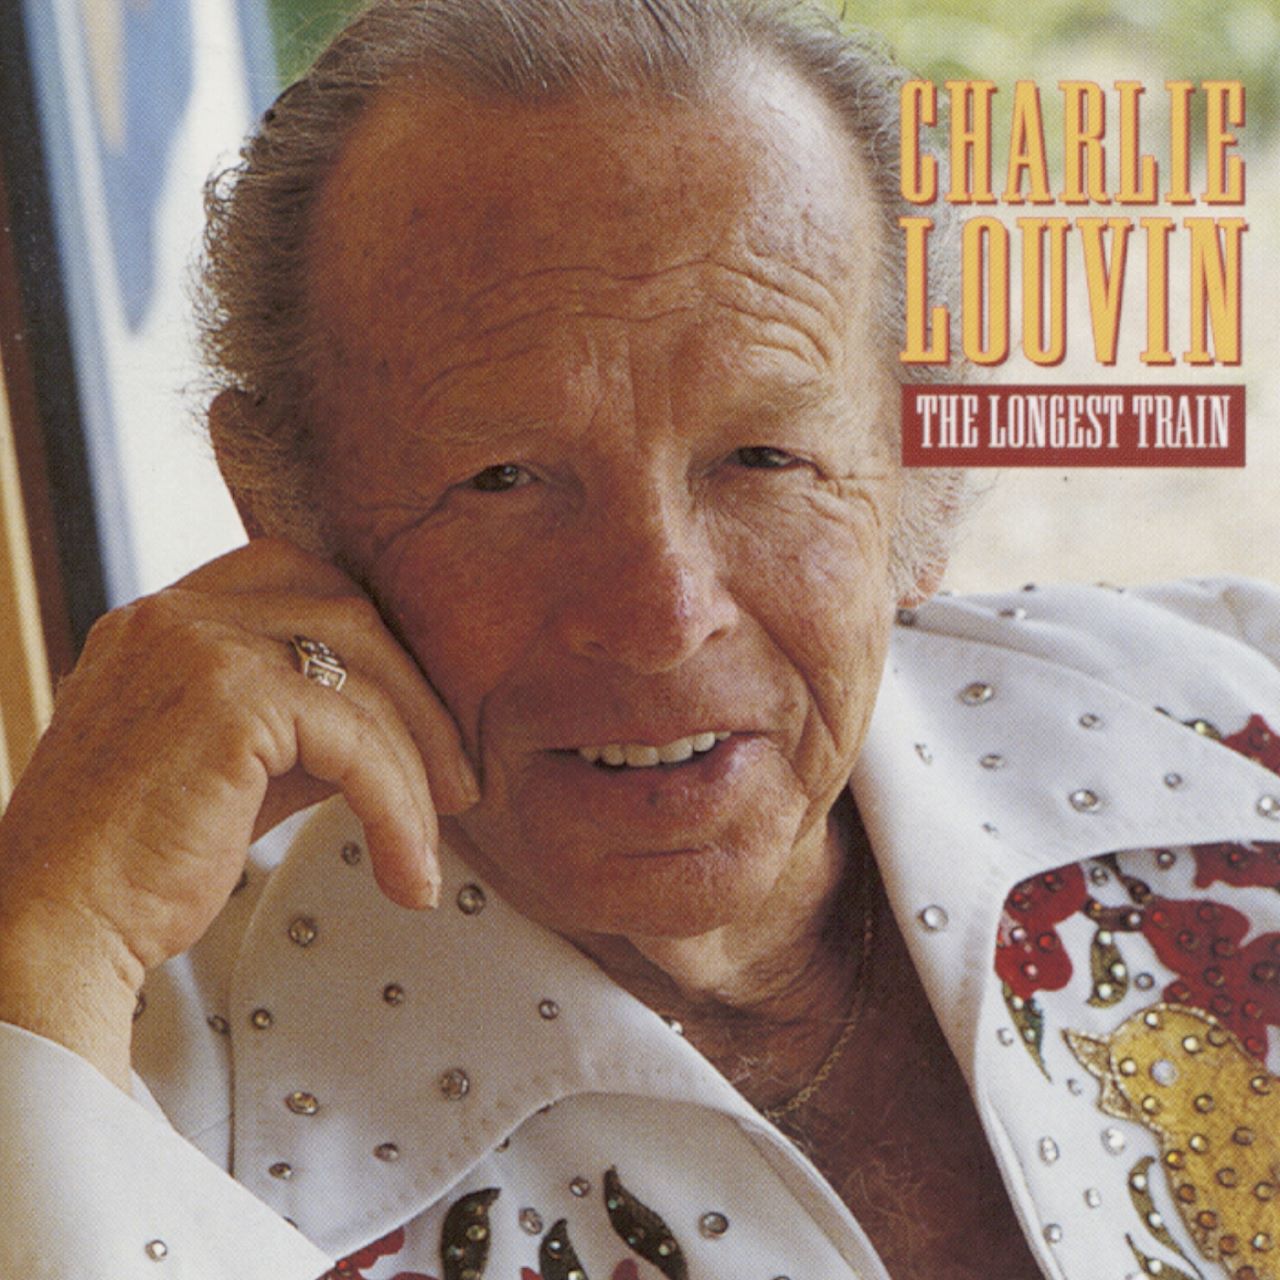 Charlie Louvin - The Longest Train cover album